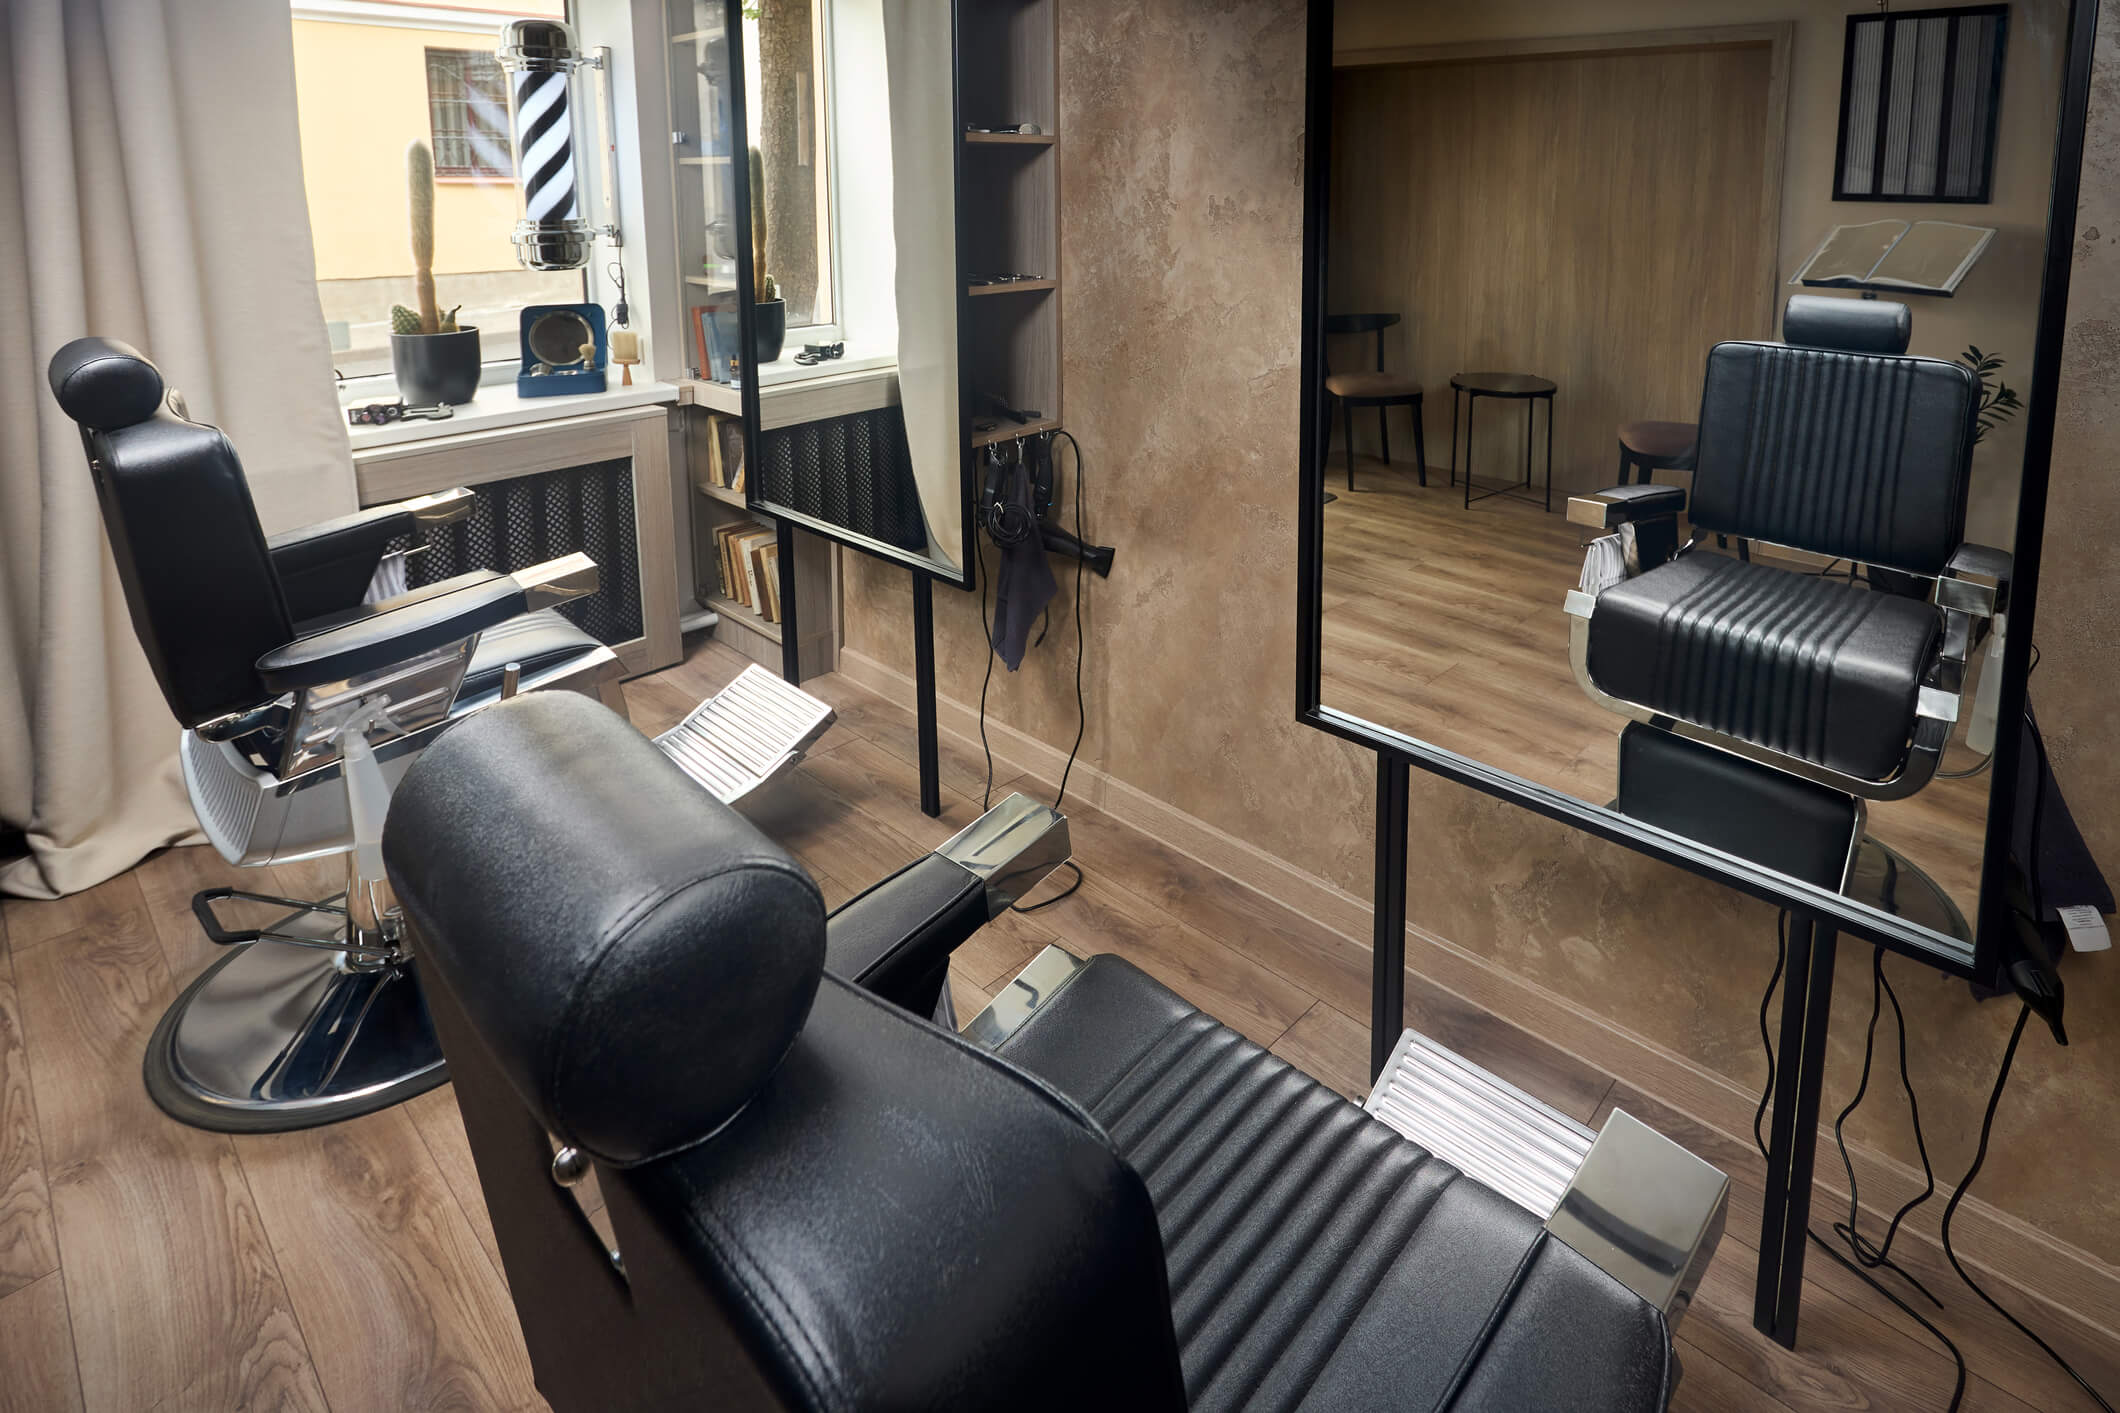 8 Simple Barber Shop Design Ideas - SALONORY Studio